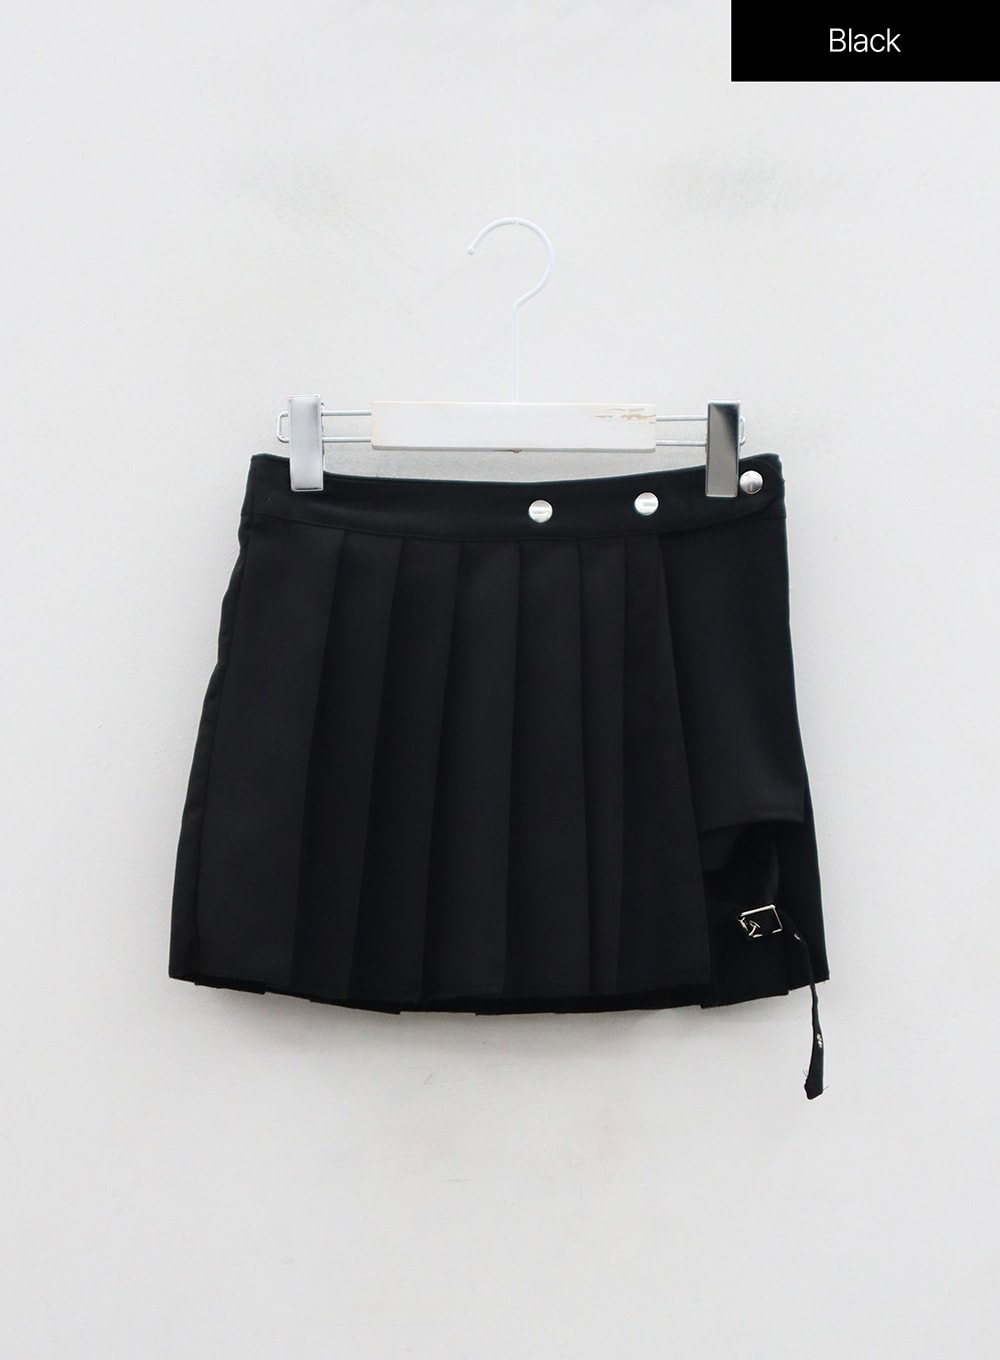 Shorts, Pleated Mini Skort